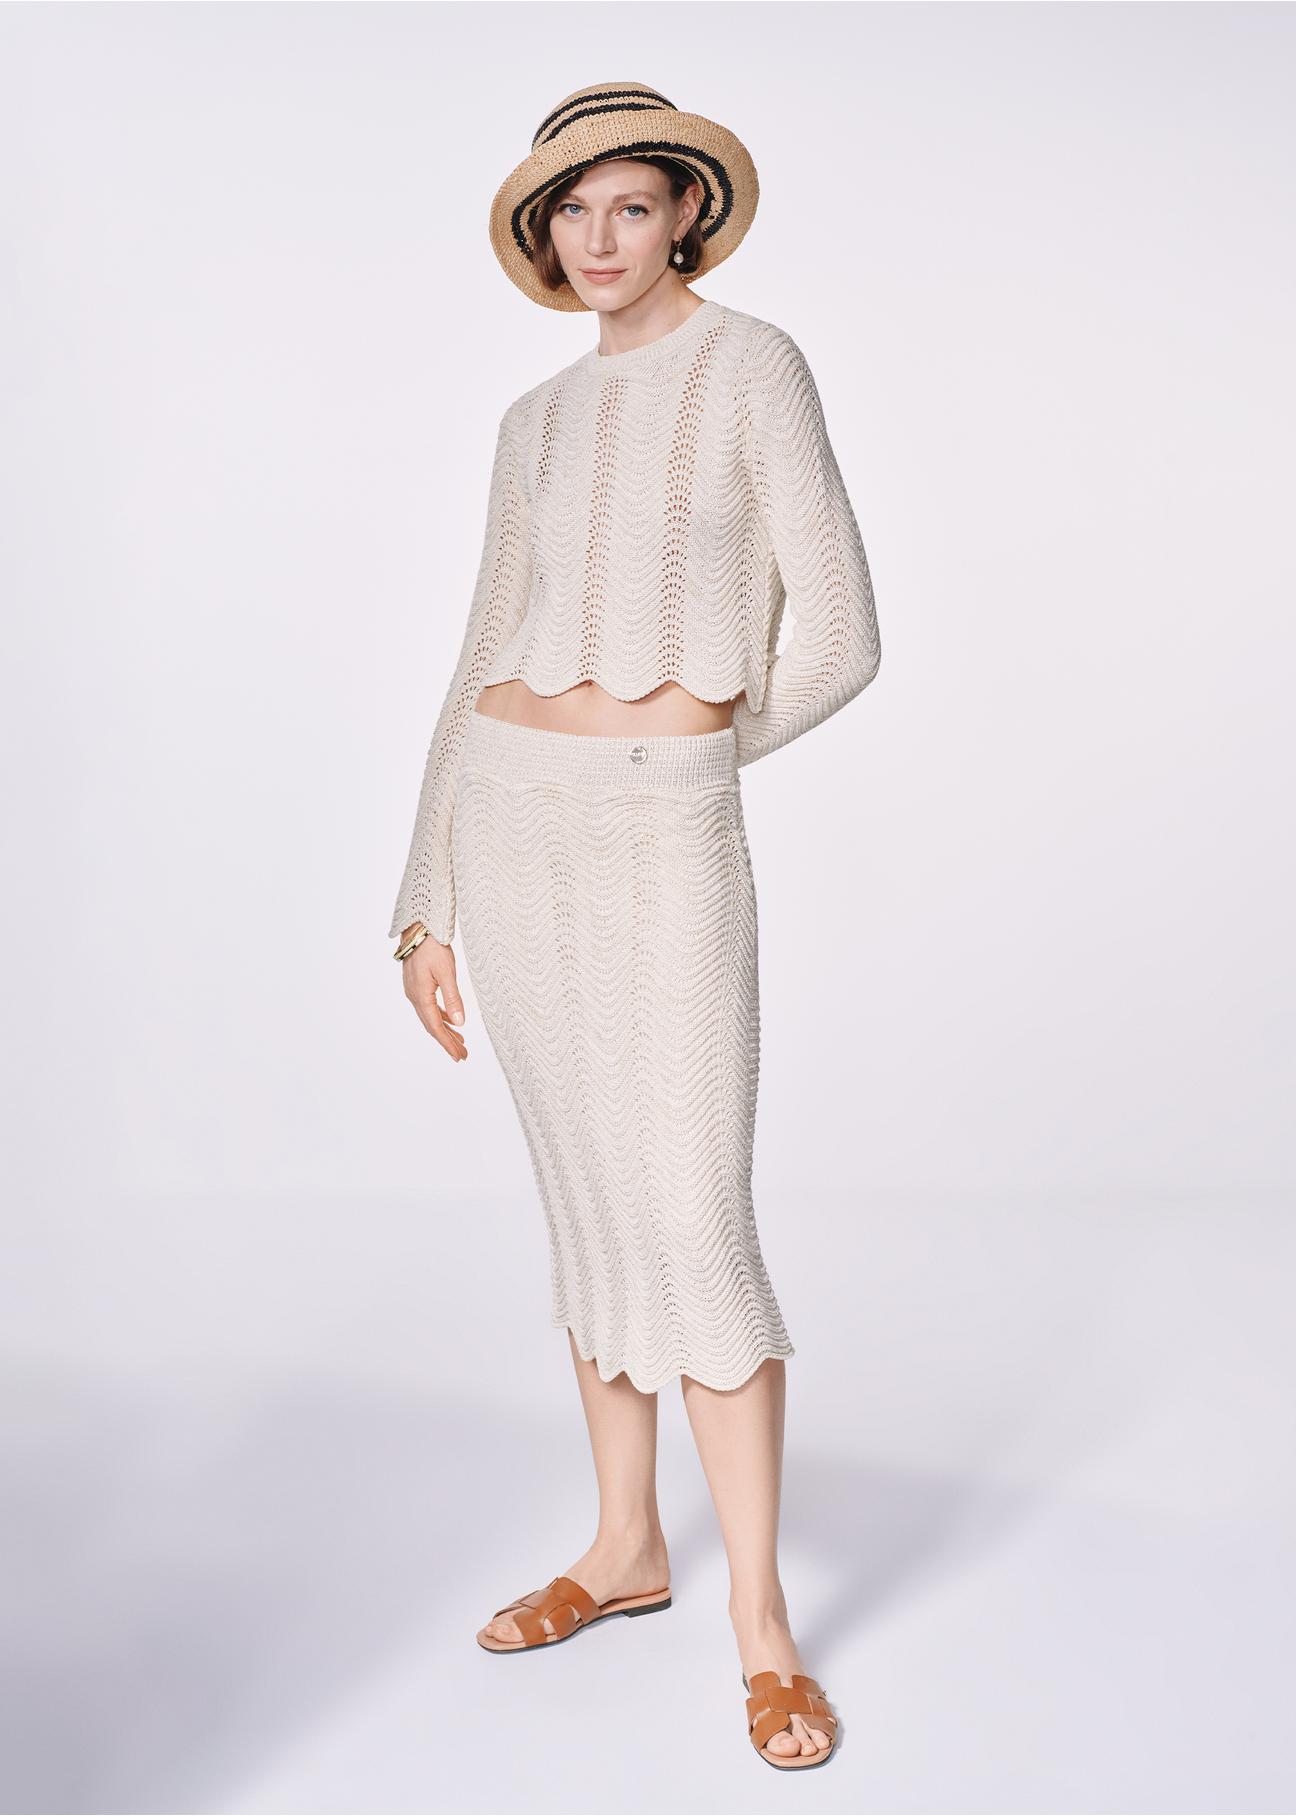 Kremowy ażurowy sweter damski SWEDT-0229-81(W24)-01